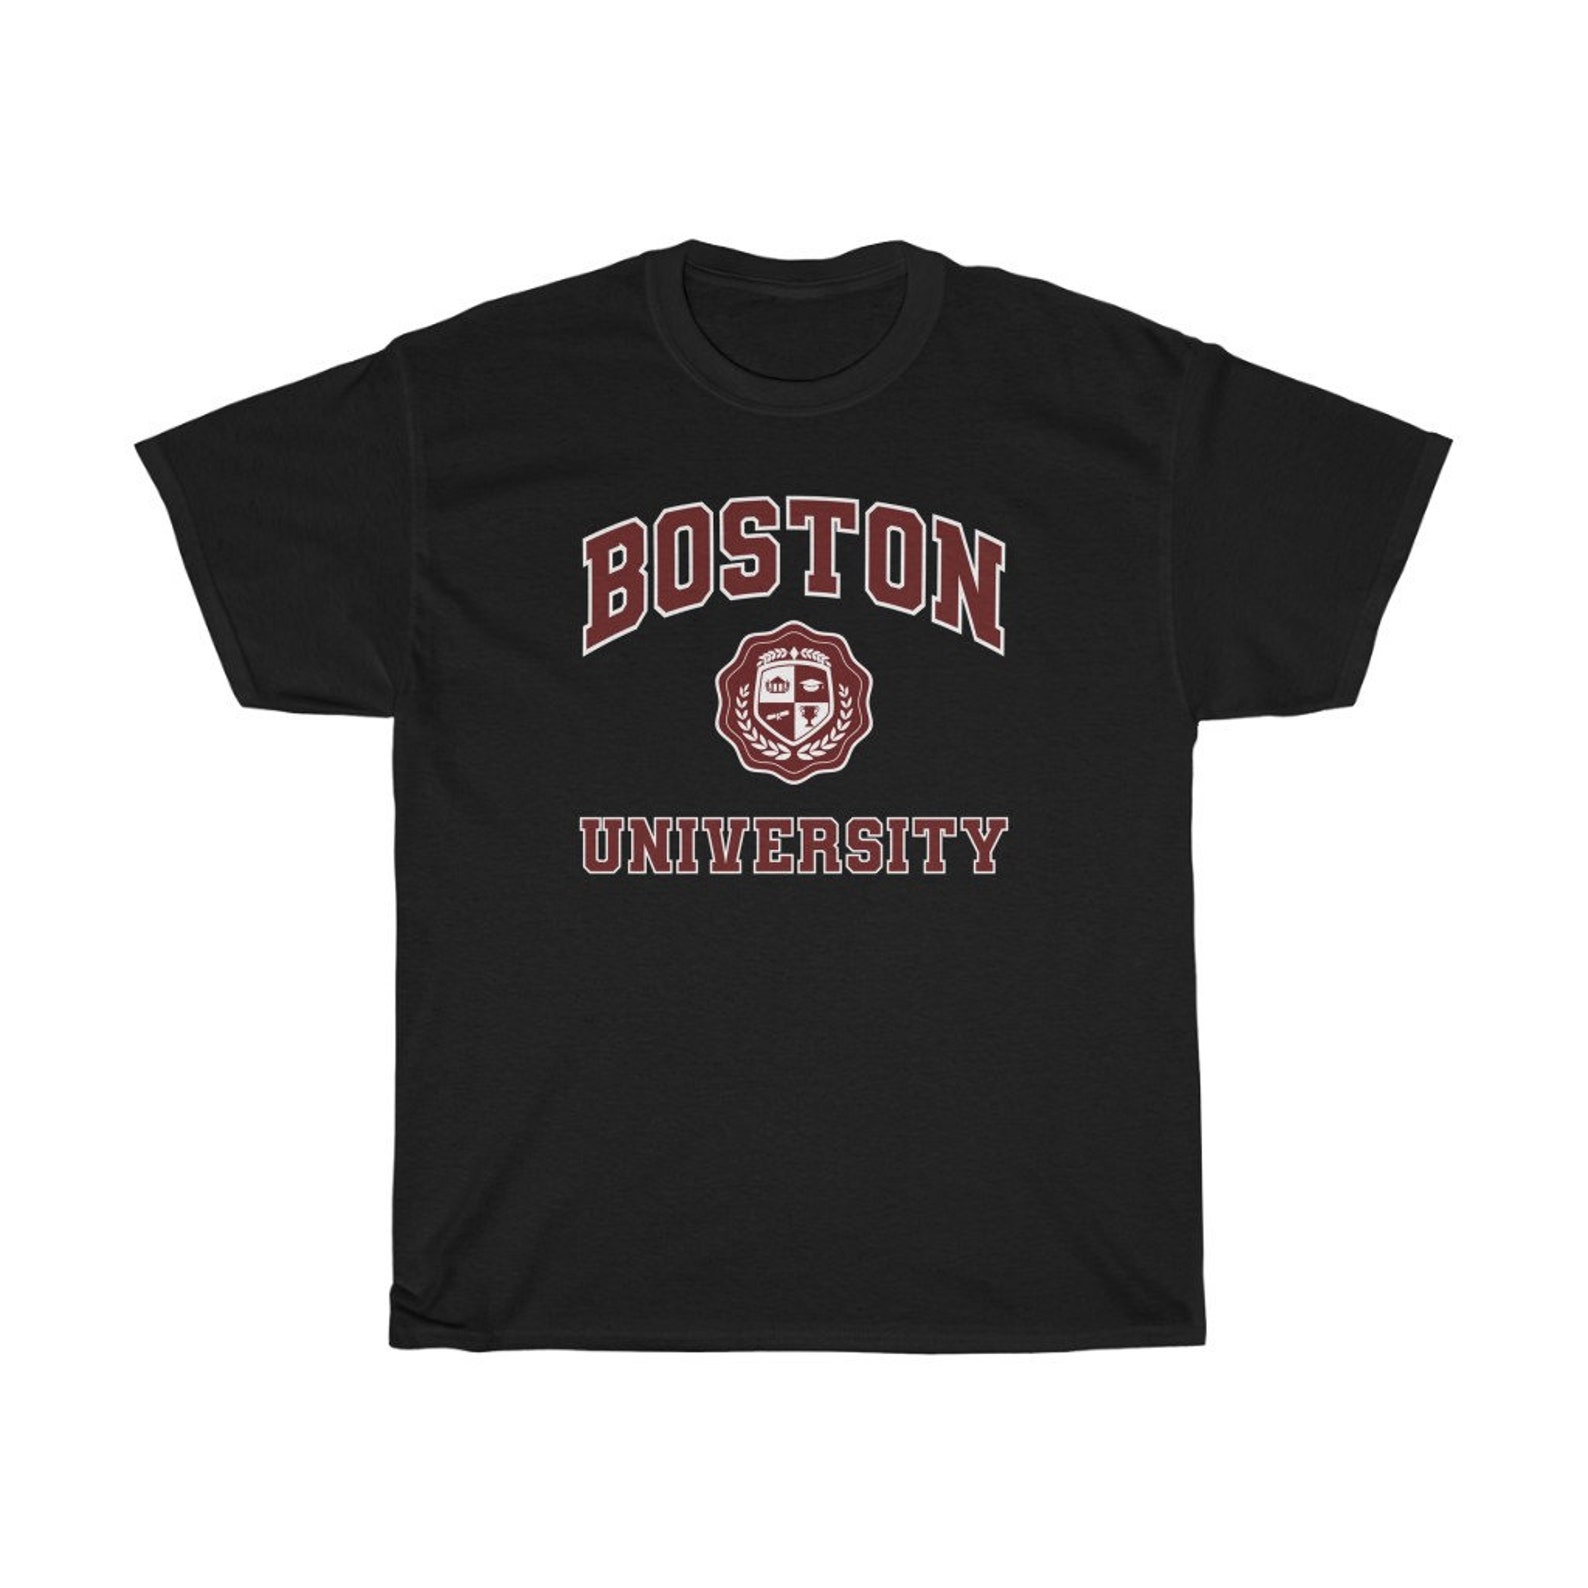 Boston University Shirt Boston University Tshirt Boston - Etsy